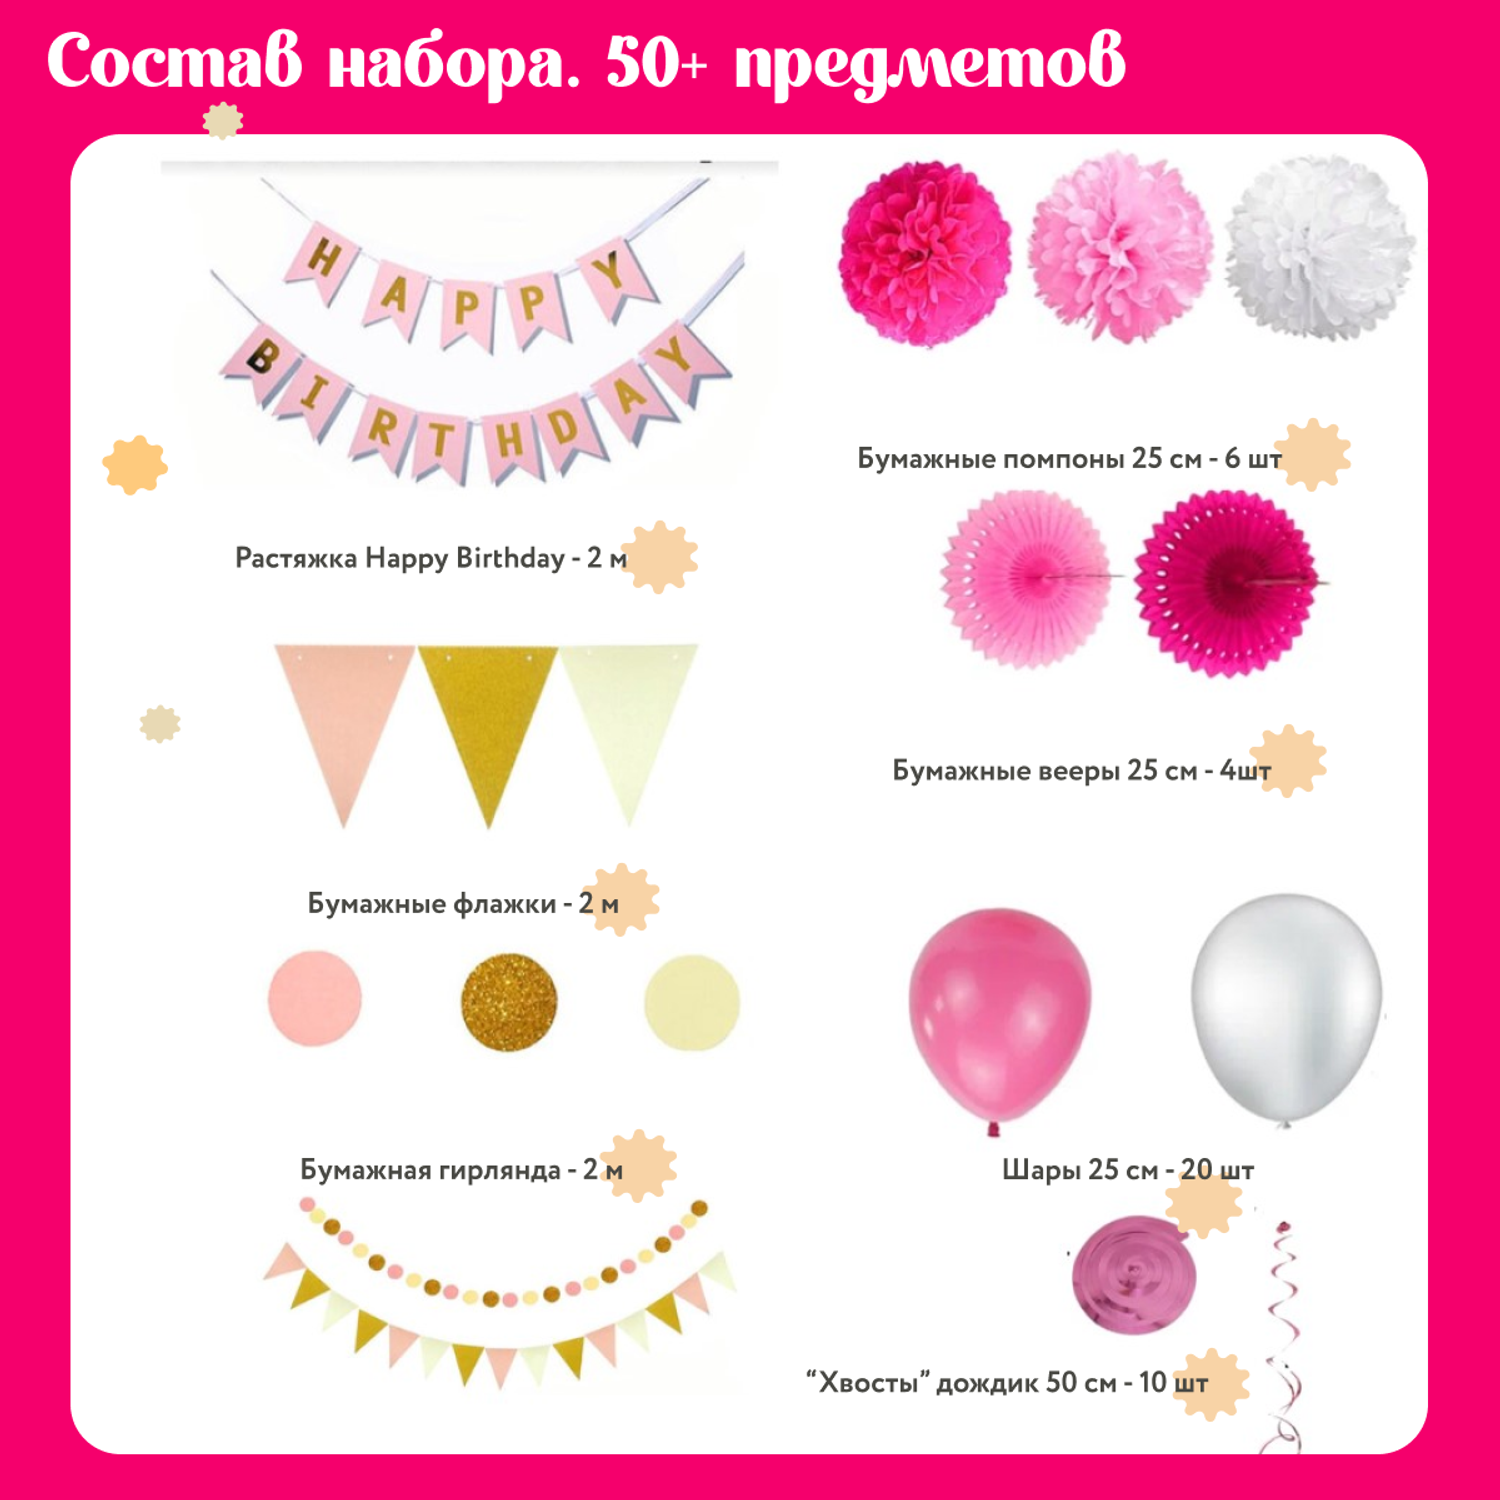 Воздушные шары набор Мишины шарики для фотозоны на день рождения с буквами Happy Birthday и бумажными помпонами - фото 2